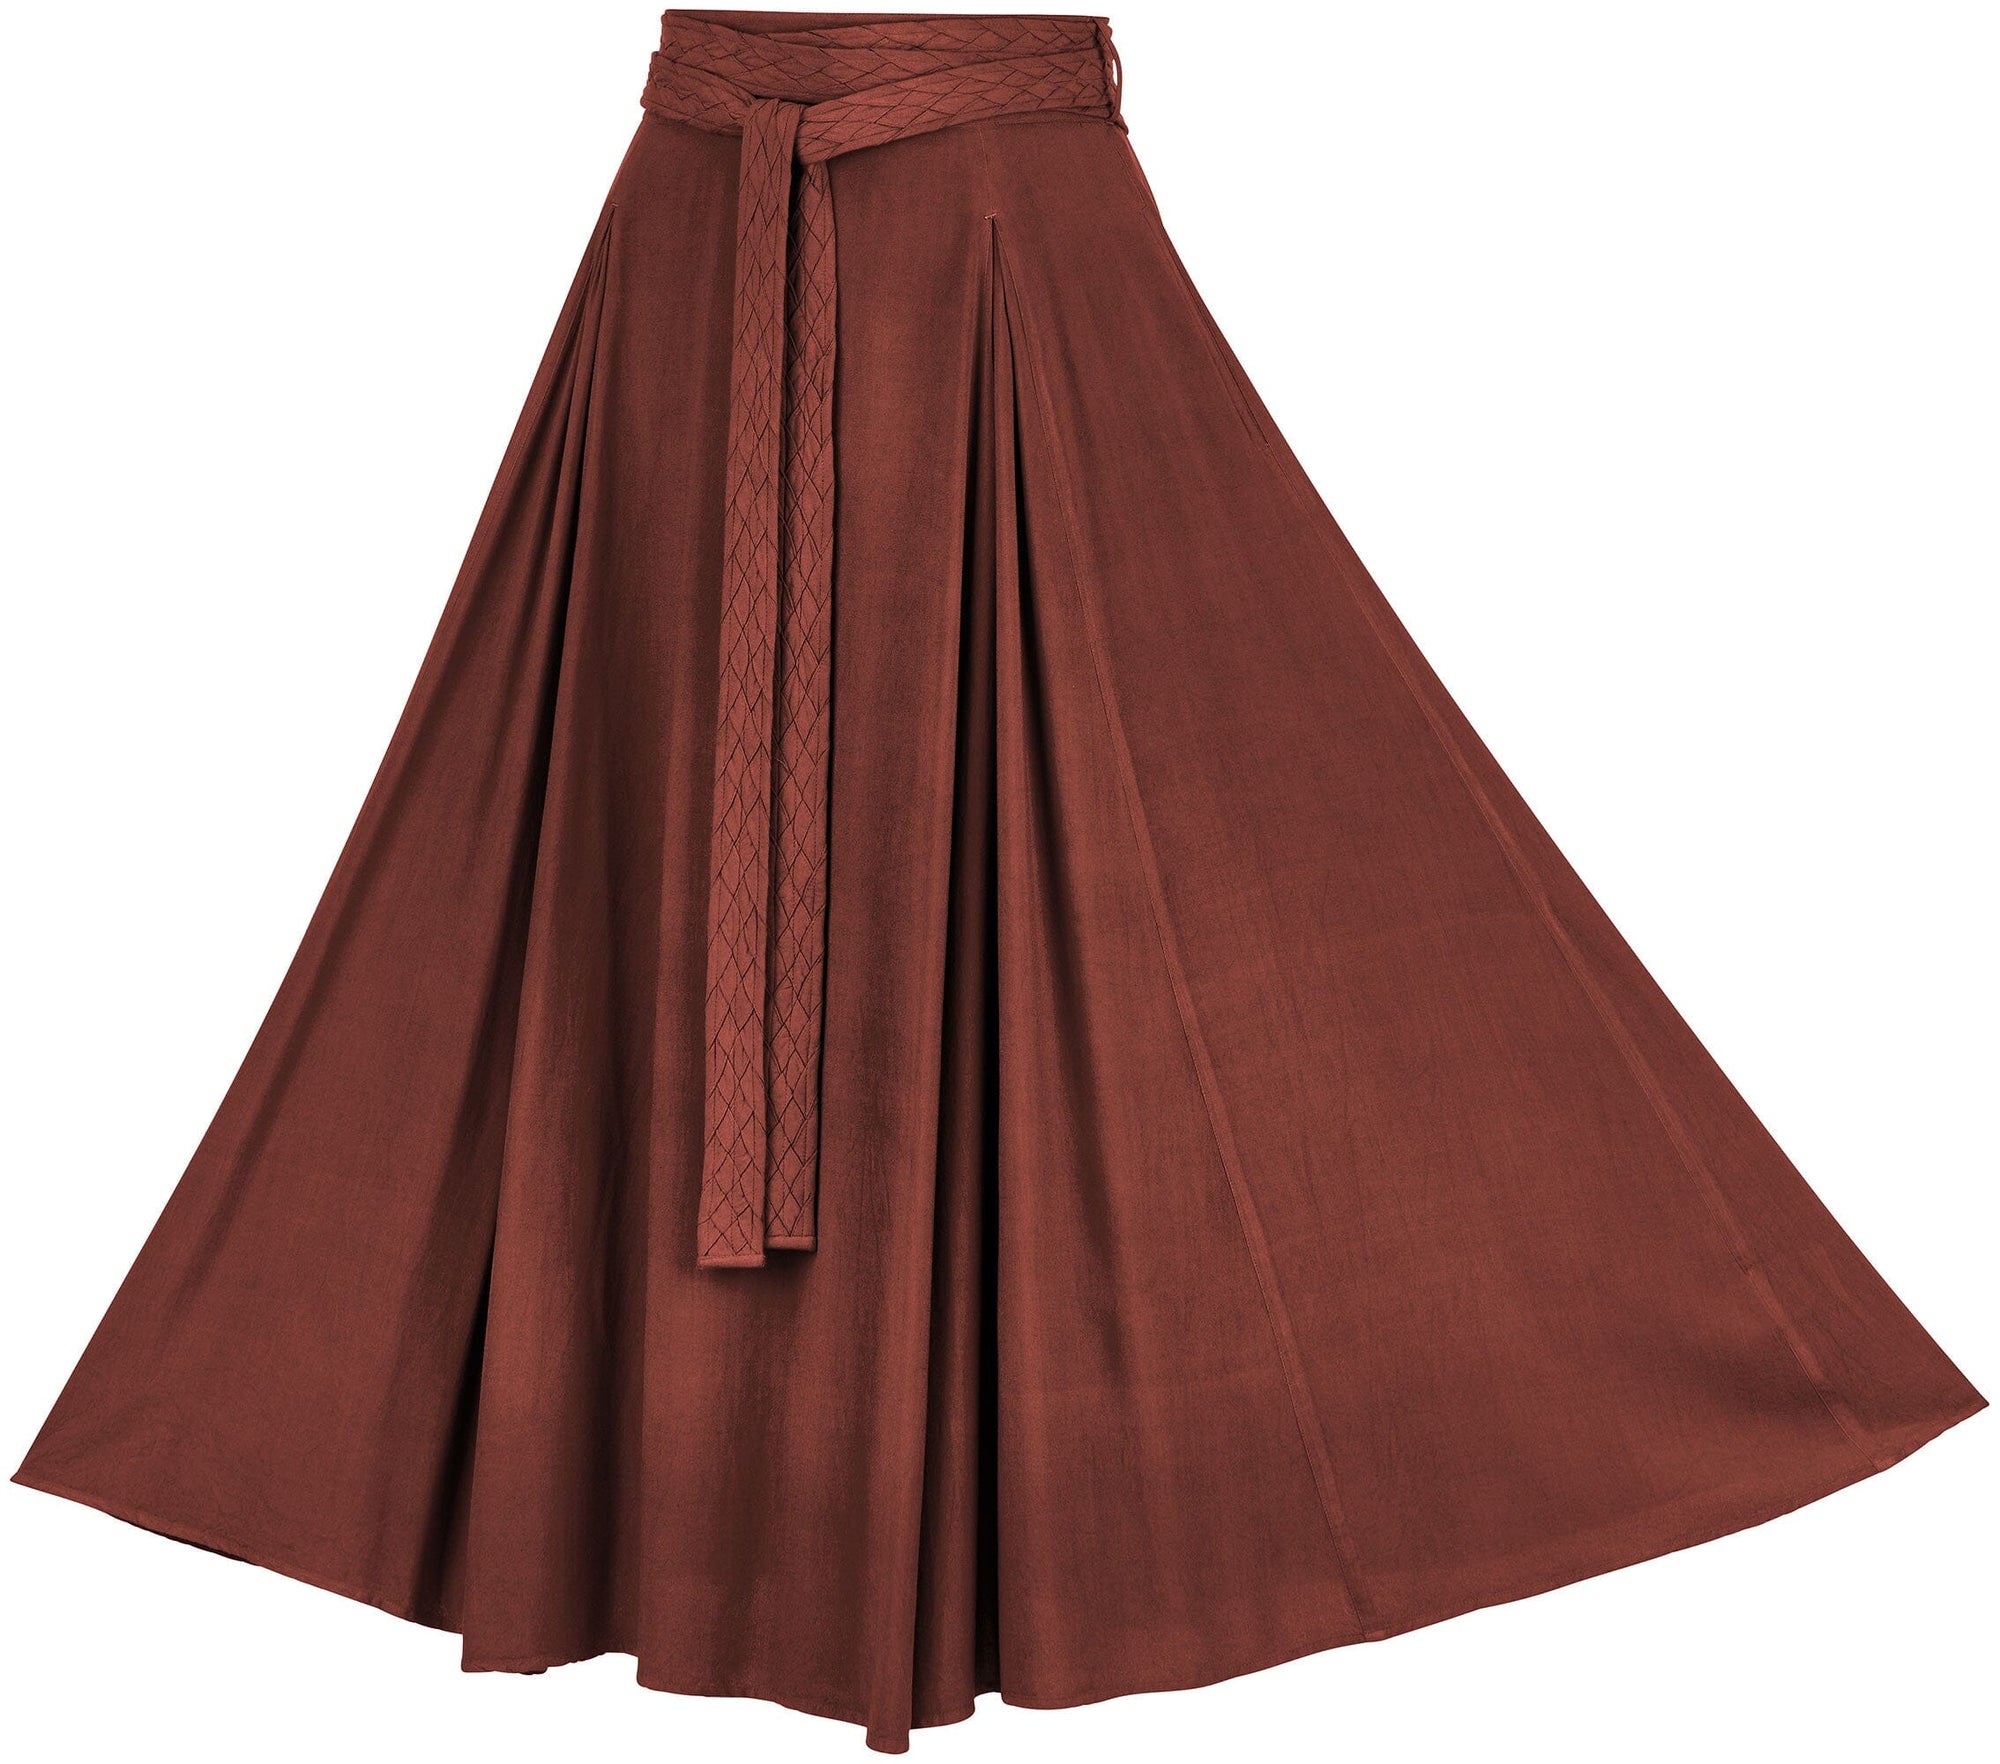 Demeter Skirt Limited Edition Harvest Auburn